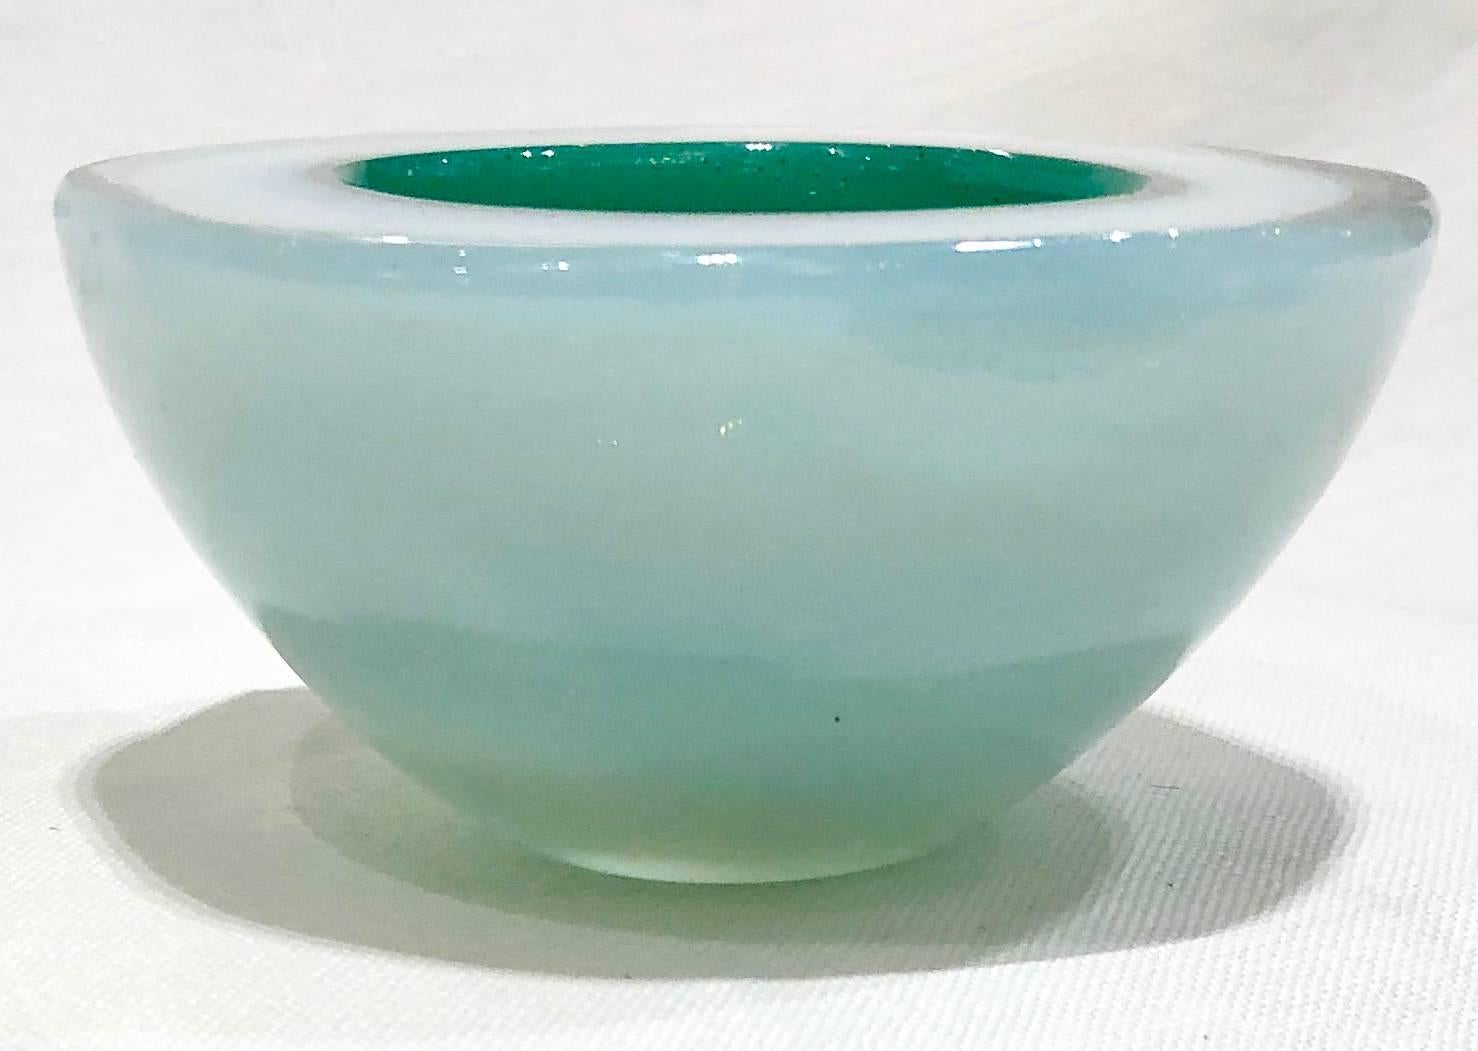 Cast white and green Murano glass dish, circa 1960s.